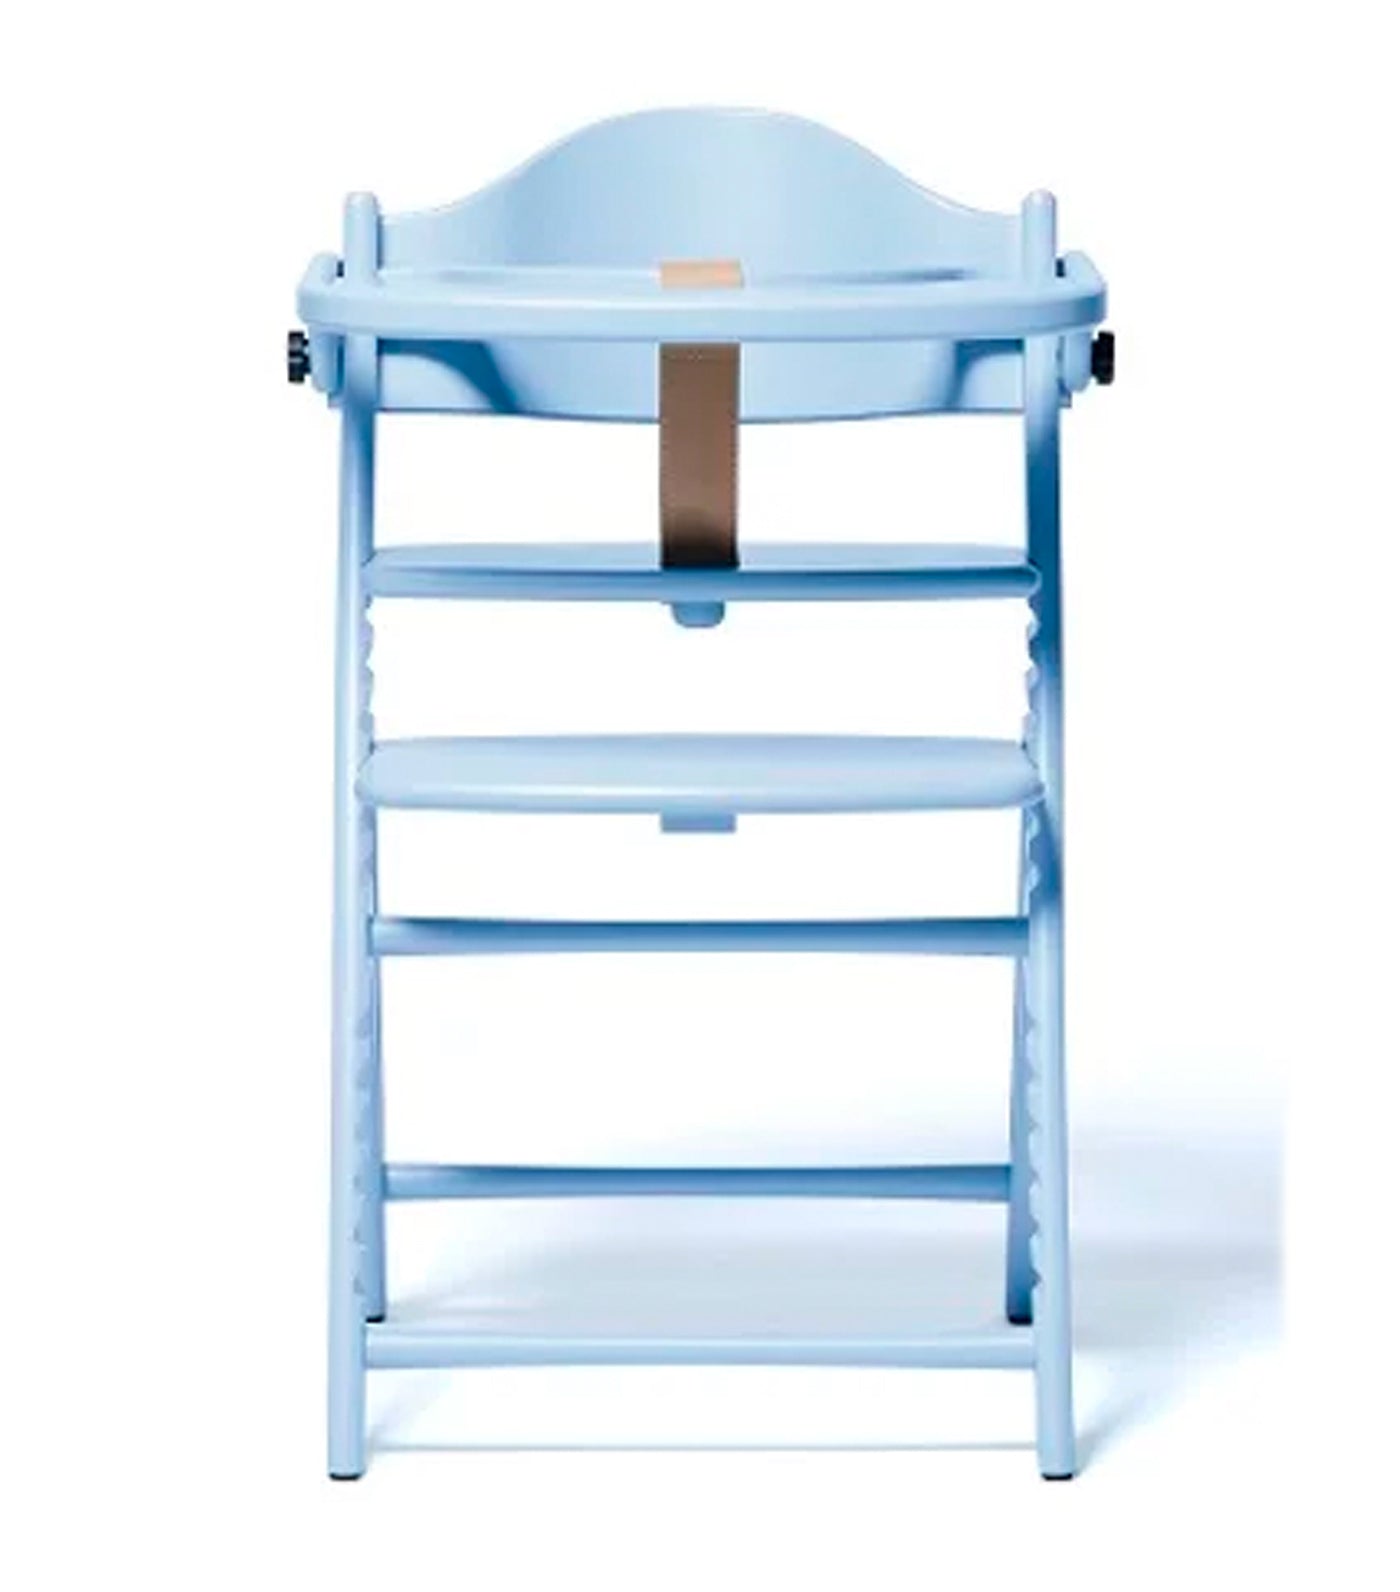 Affel Wooden High Chair - Shell Blue